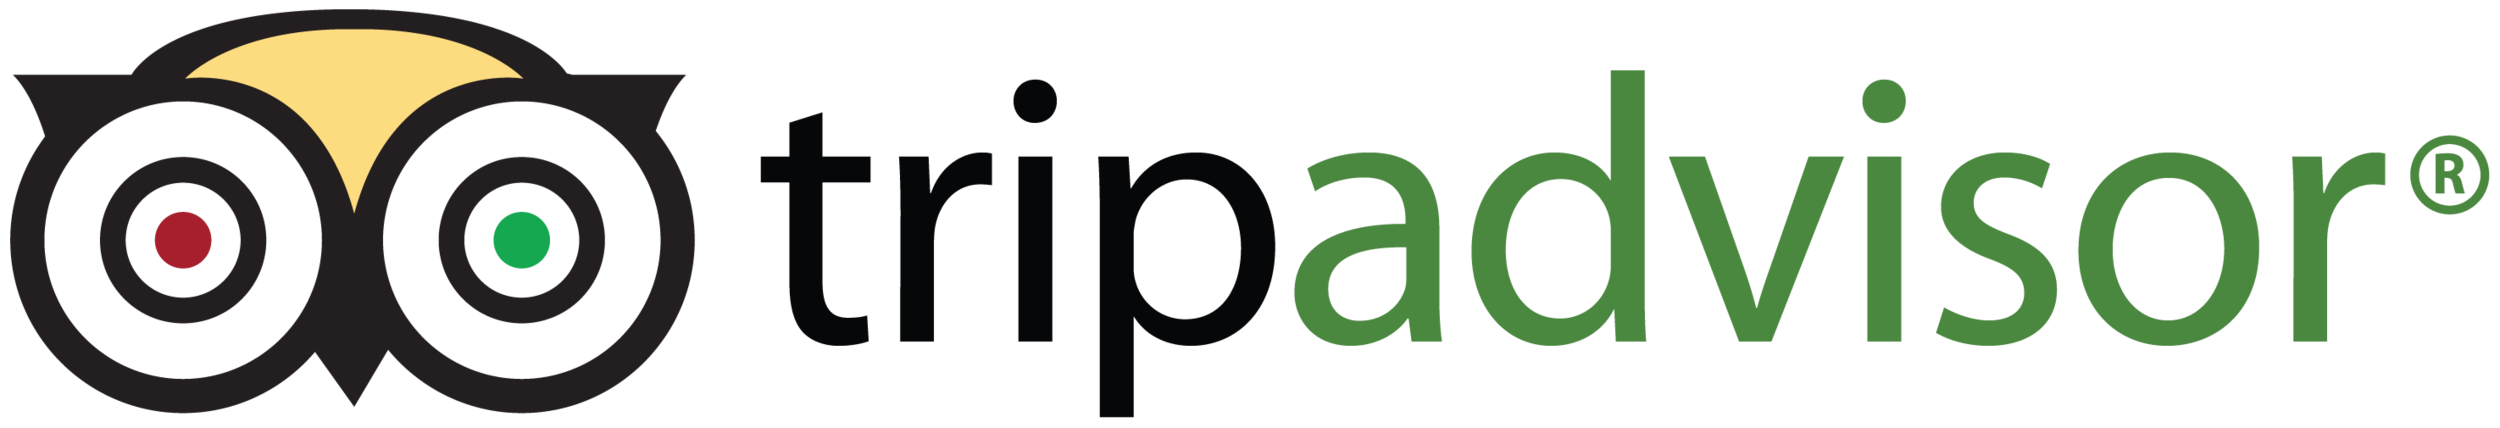 TripAdvisor-logo.png